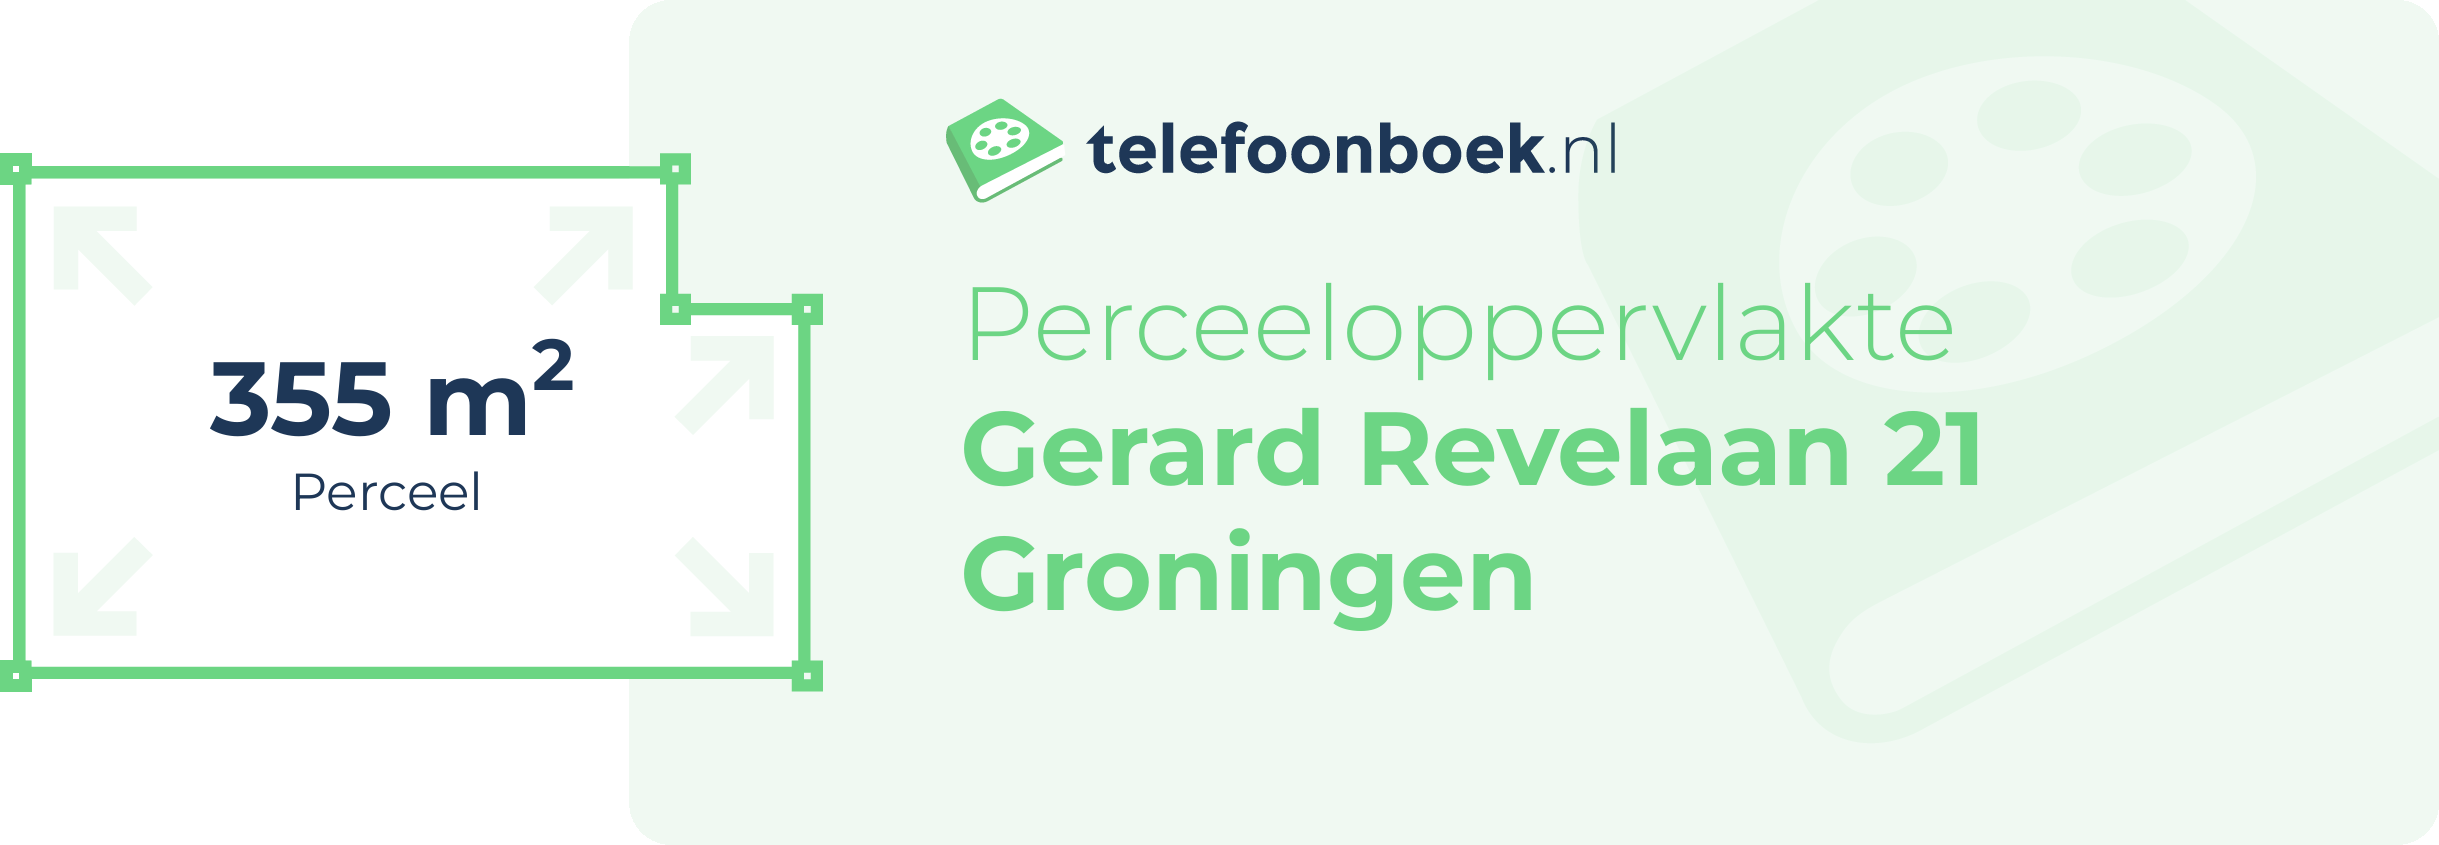 Perceeloppervlakte Gerard Revelaan 21 Groningen